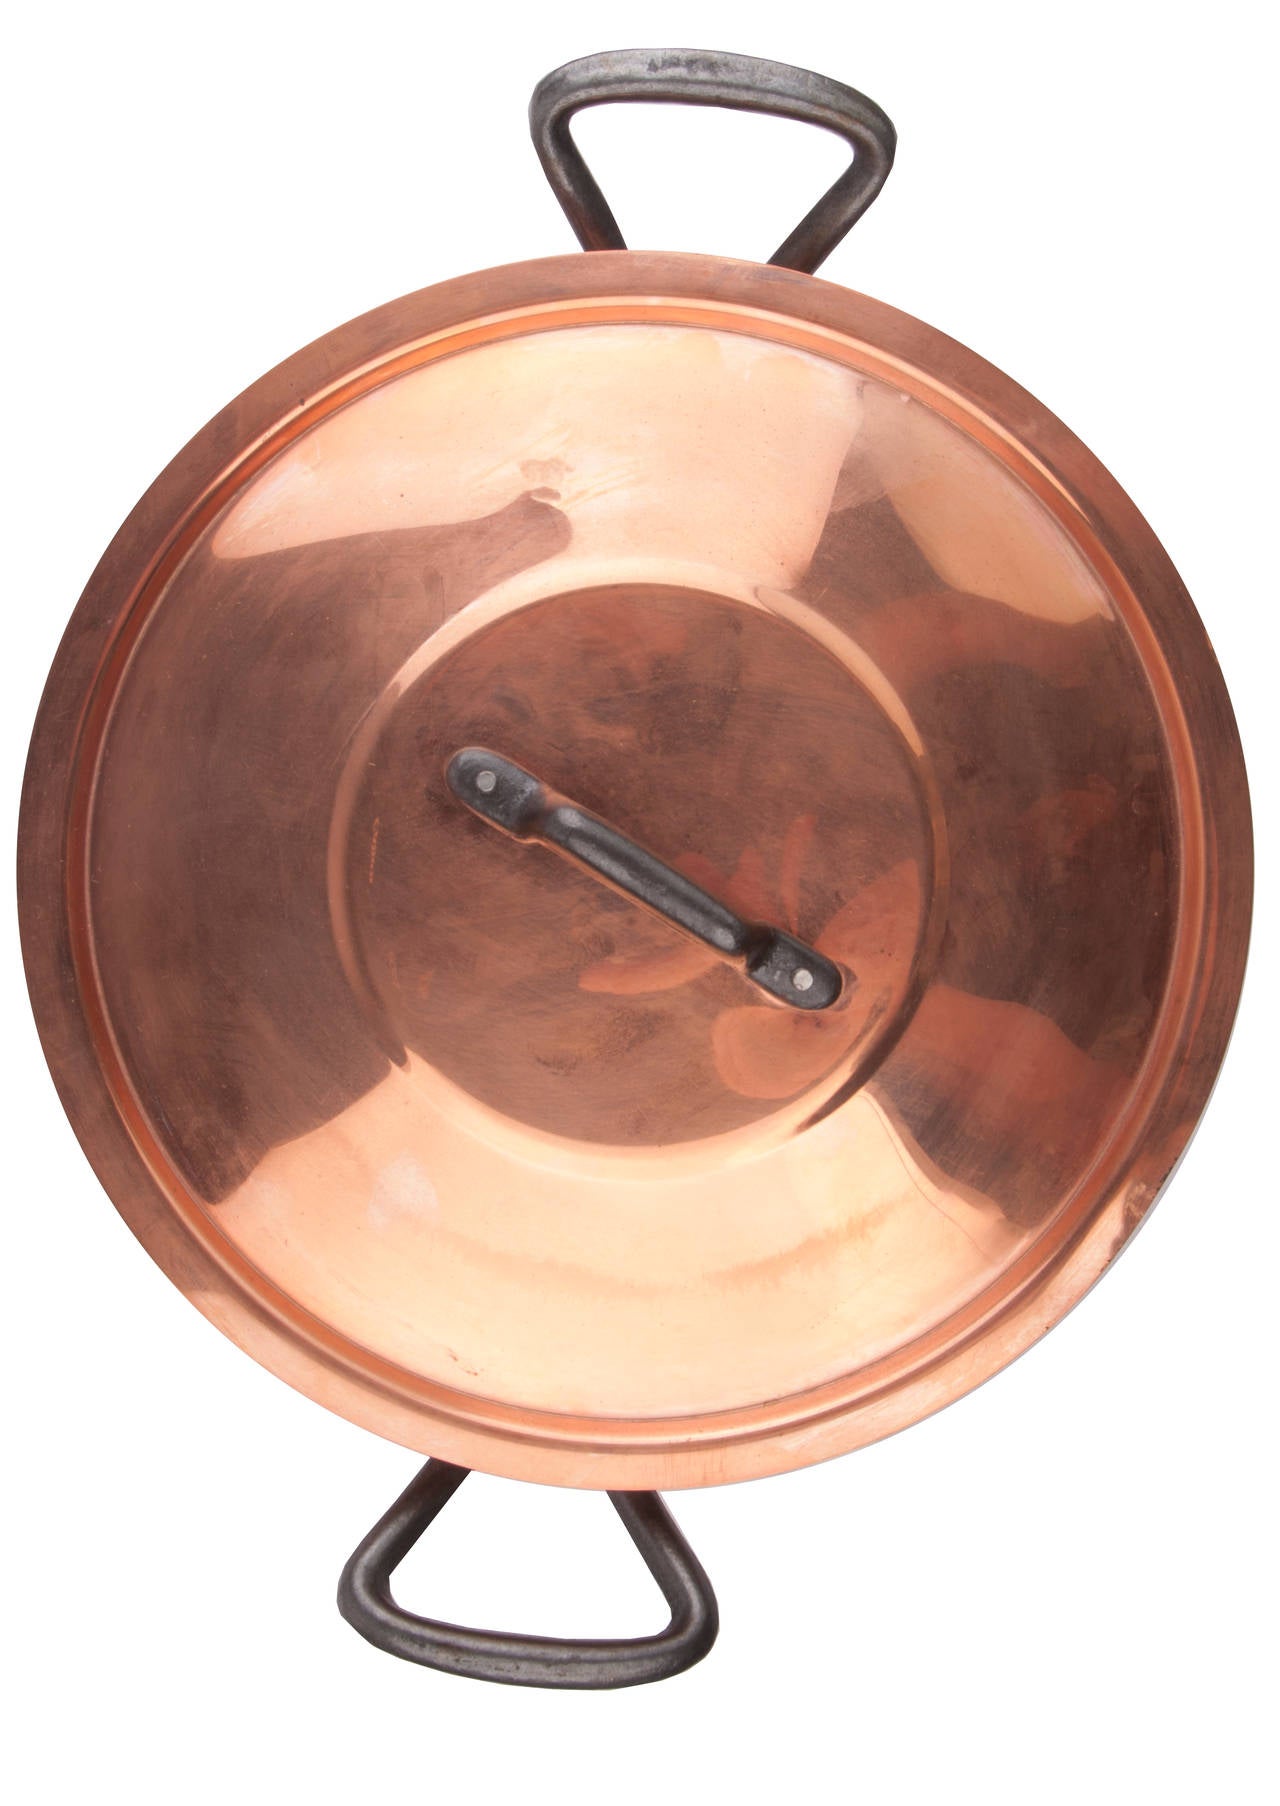 baumalu copper pan